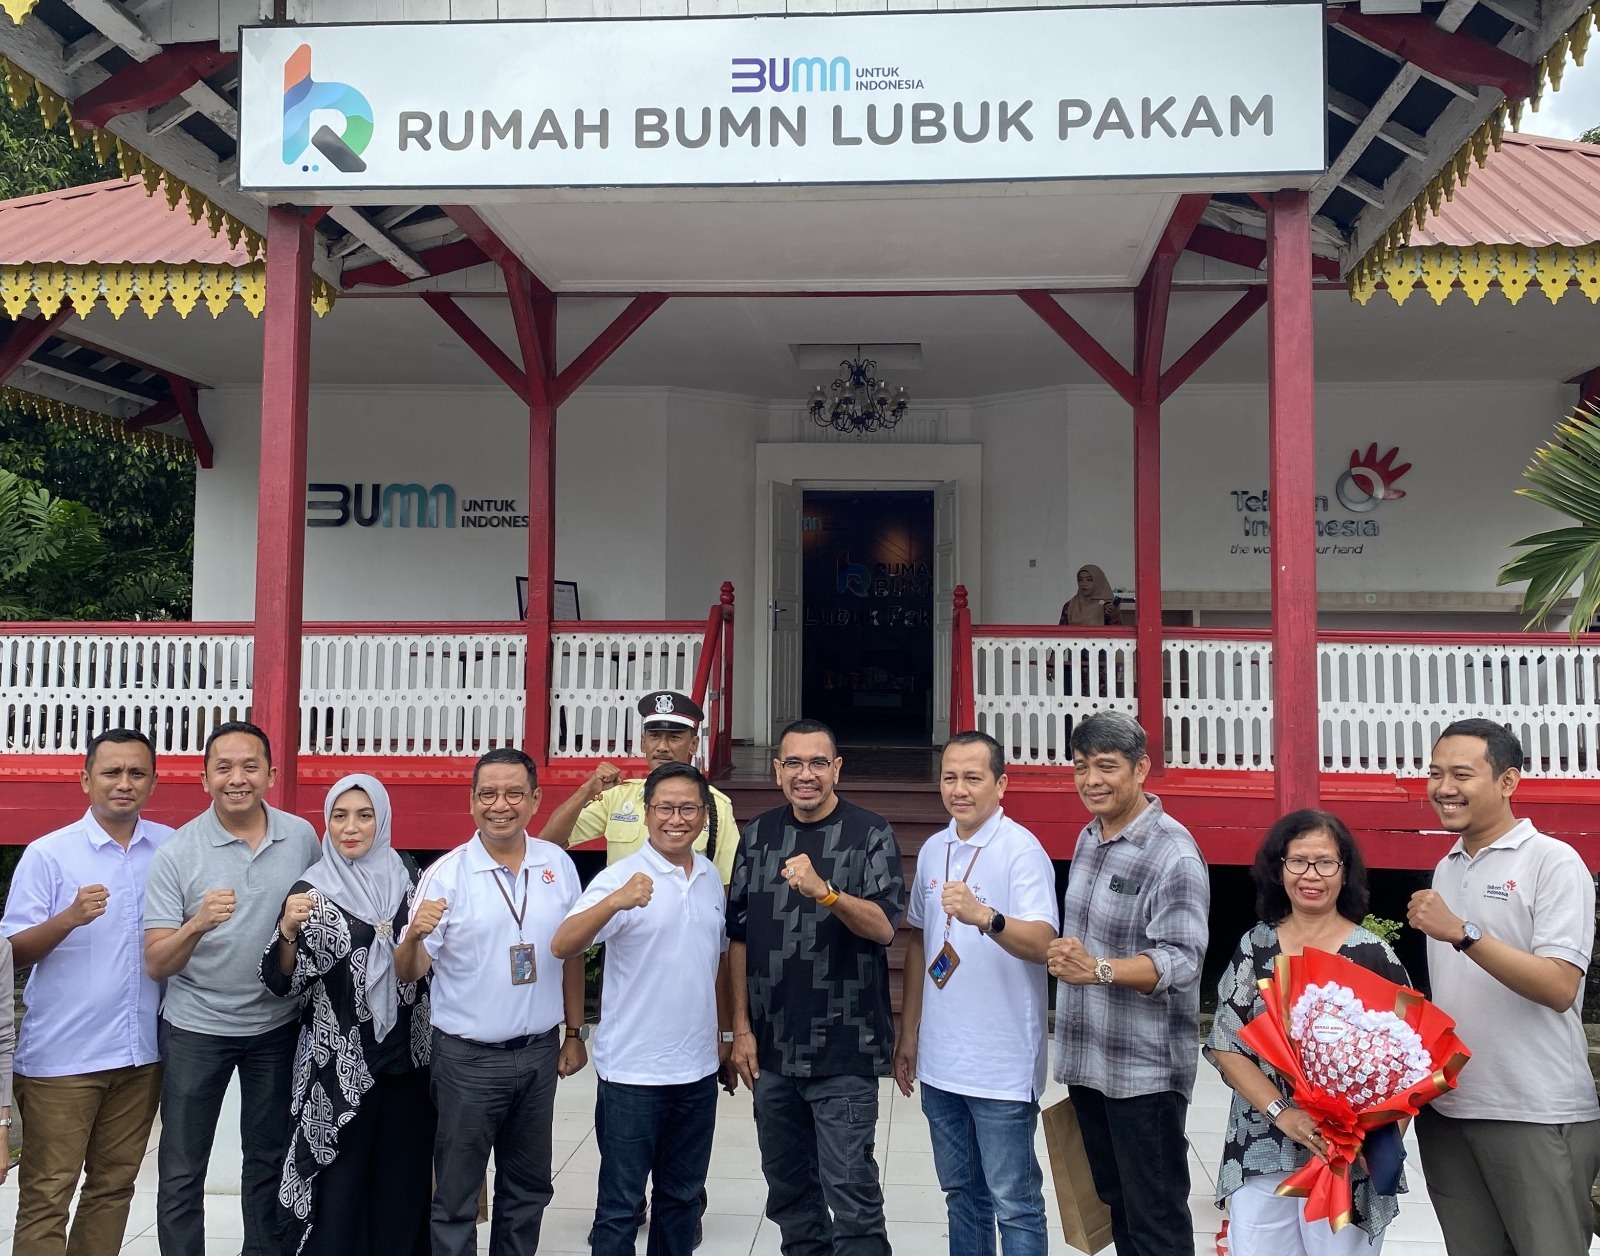 Rumah BUMN Lubuk Pakam: Telkom Indonesia Ubah Kantor Menjadi Tempat Pembinaan UMKM